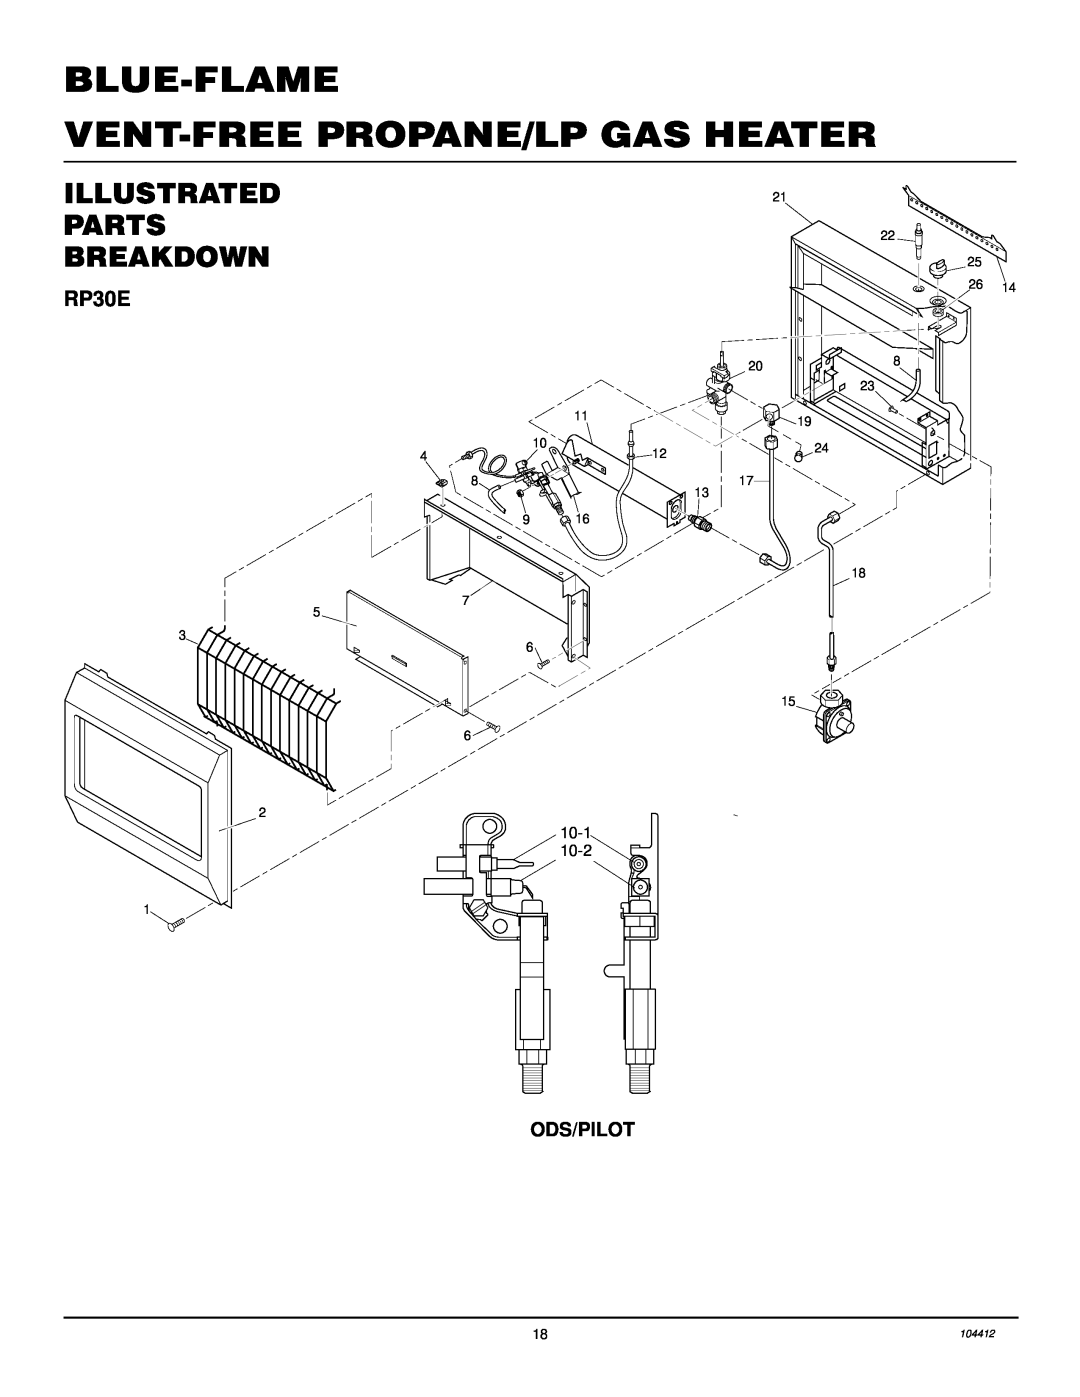 Desa CGP20LB, CGP20B Illustrated Parts Breakdown, Blue-Flame Vent-Freepropane/Lp Gas Heater, RP30E, Ods/Pilot 